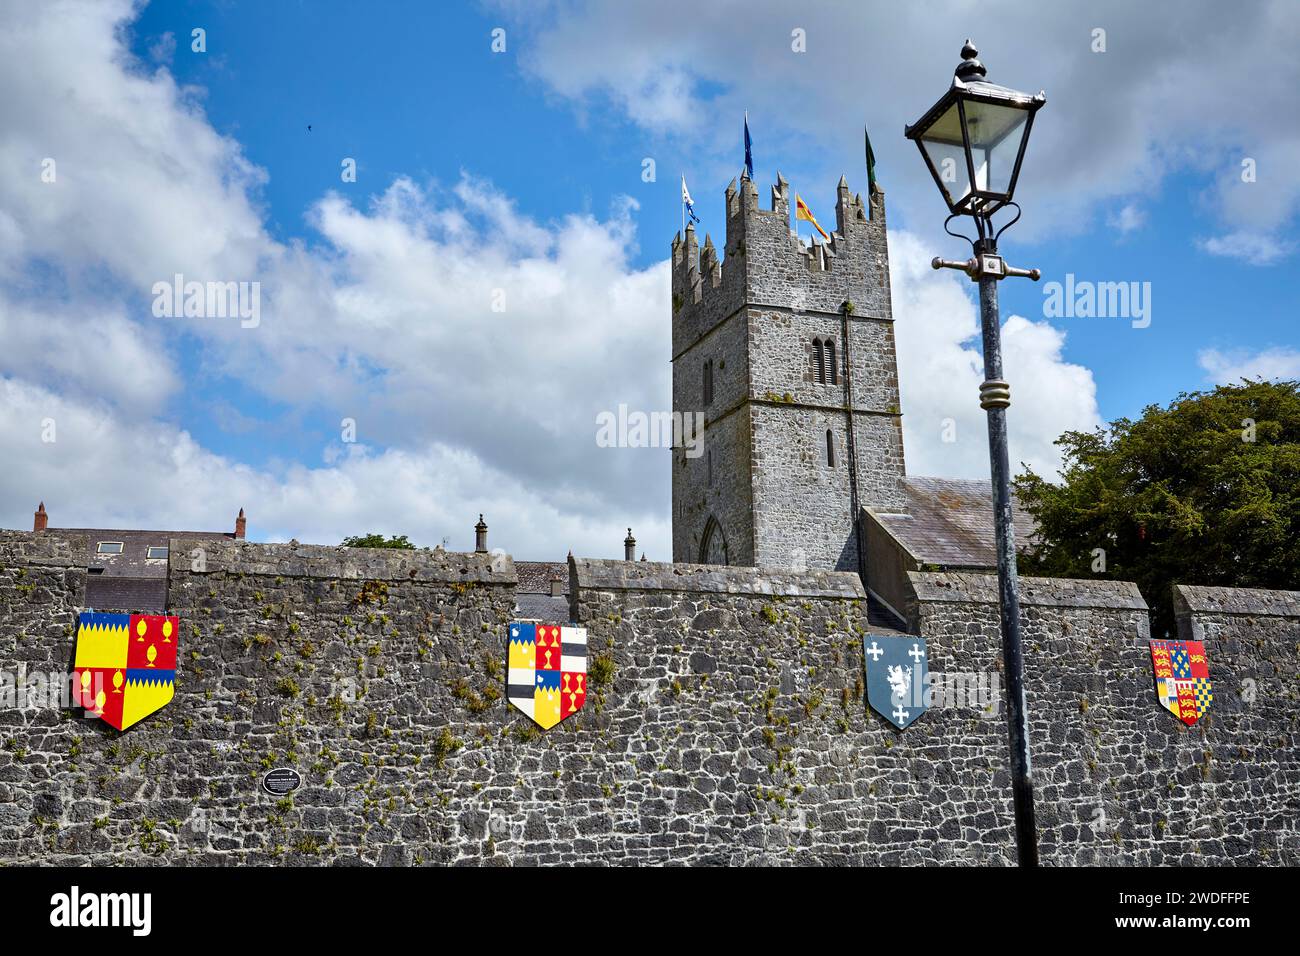 Murs fortifiés autour de la ville de Fethard, comté de Tipperary, Irlande. Banque D'Images